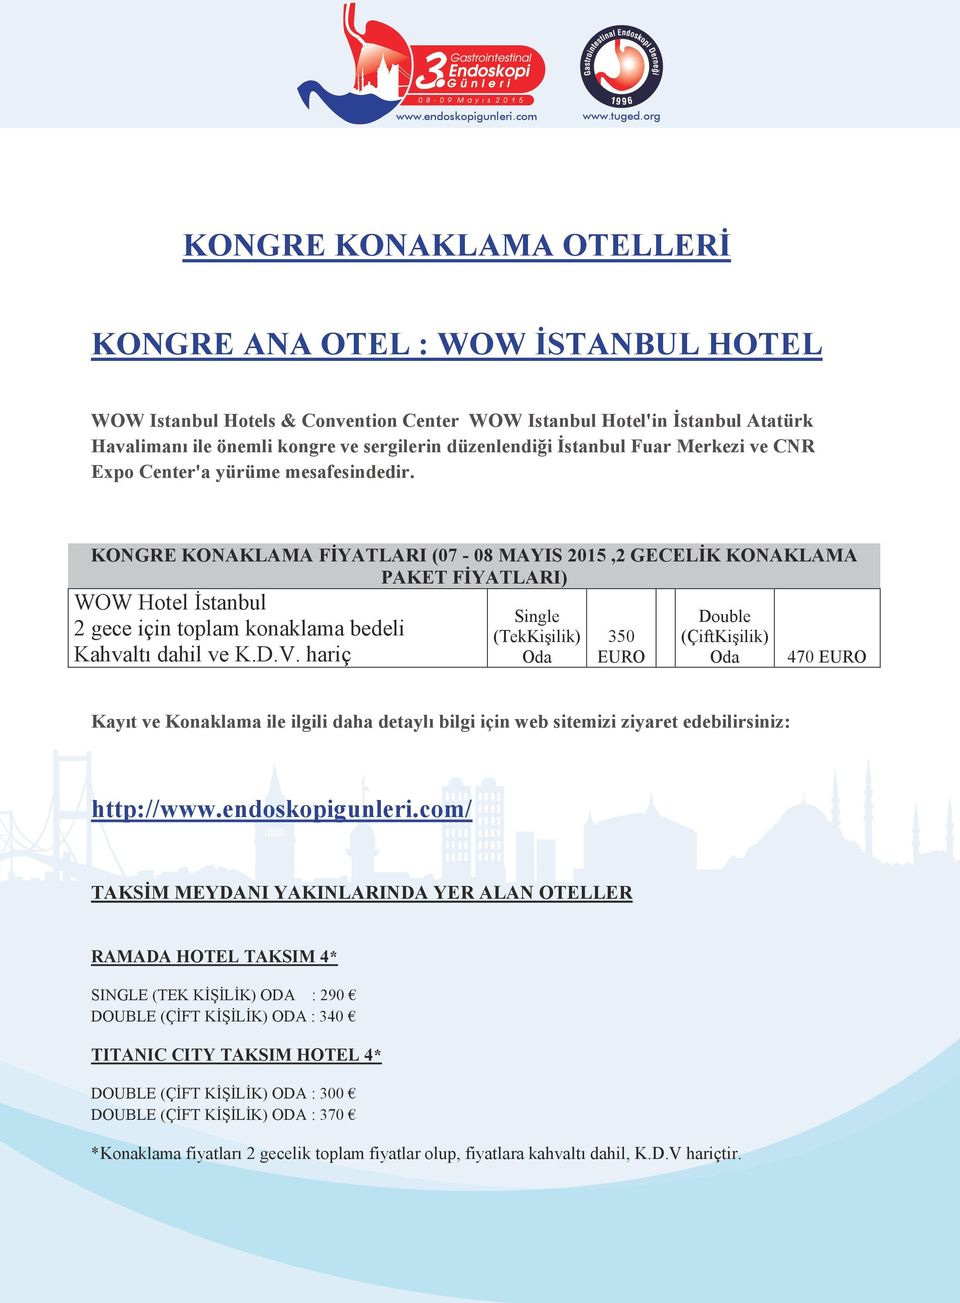 KONGRE KONAKLAMA FİYATLARI (07-08 MAYIS 2015,2 GECELİK KONAKLAMA PAKET FİYATLARI) WOW Hotel İstanbul 2 gece için toplam konaklama bedeli Kahvaltı dahil ve K.D.V.